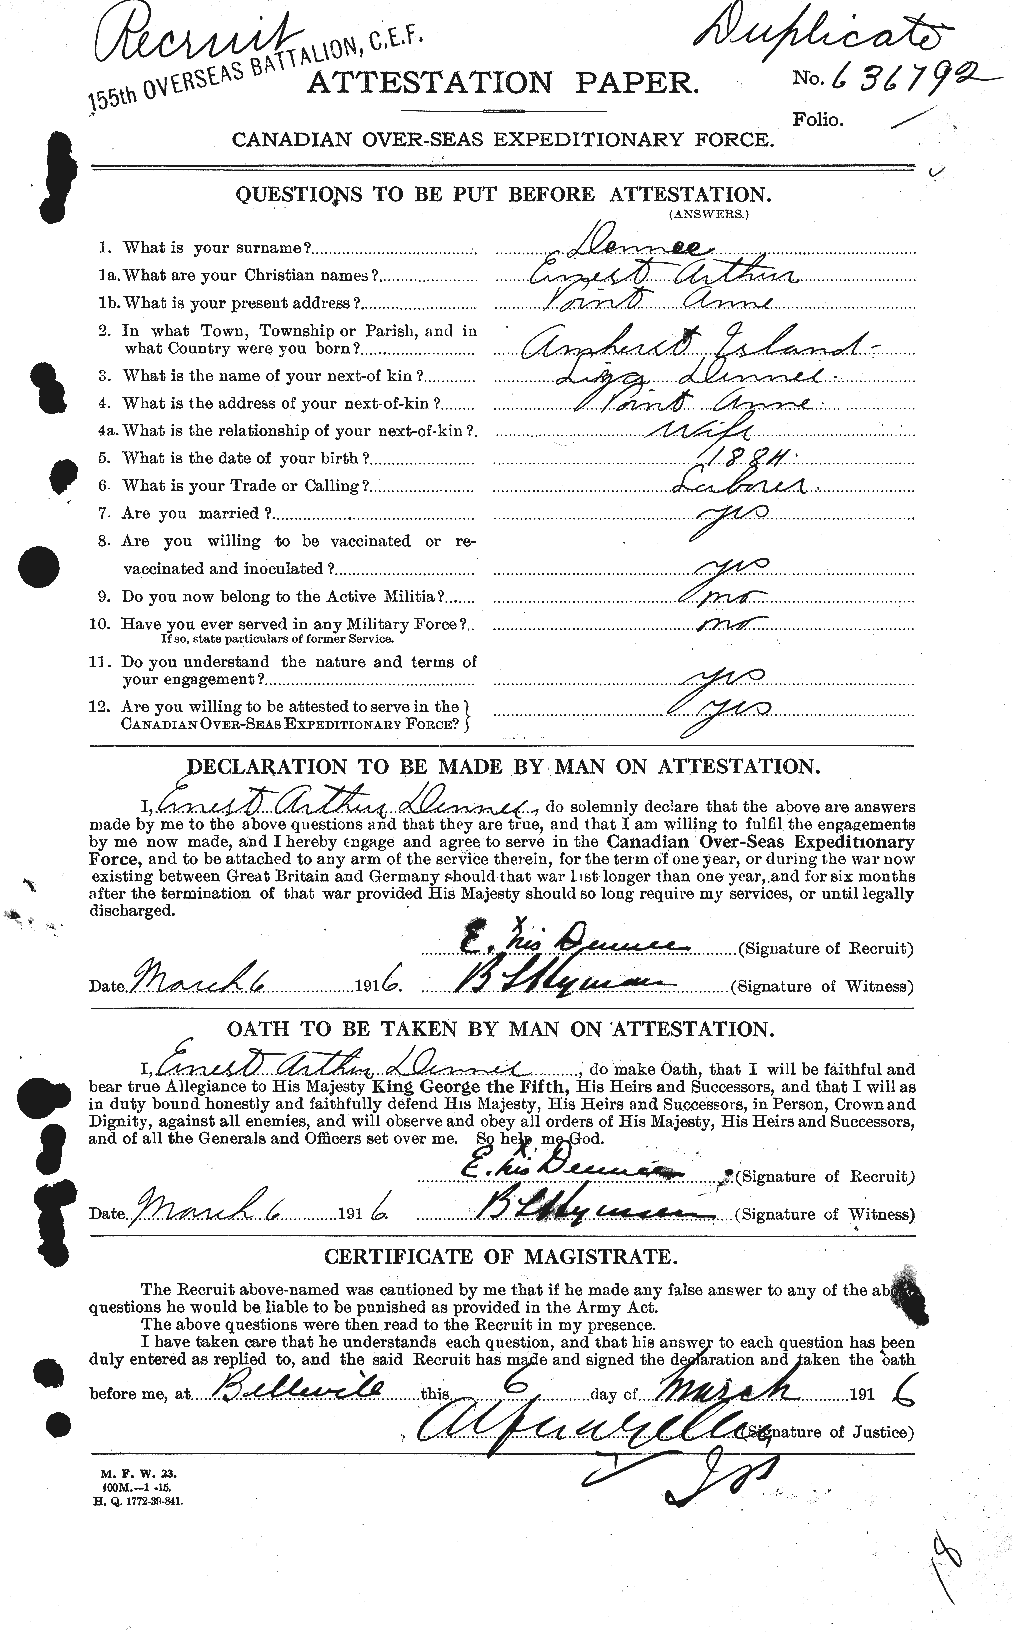 Dossiers du Personnel de la Première Guerre mondiale - CEC 286050a